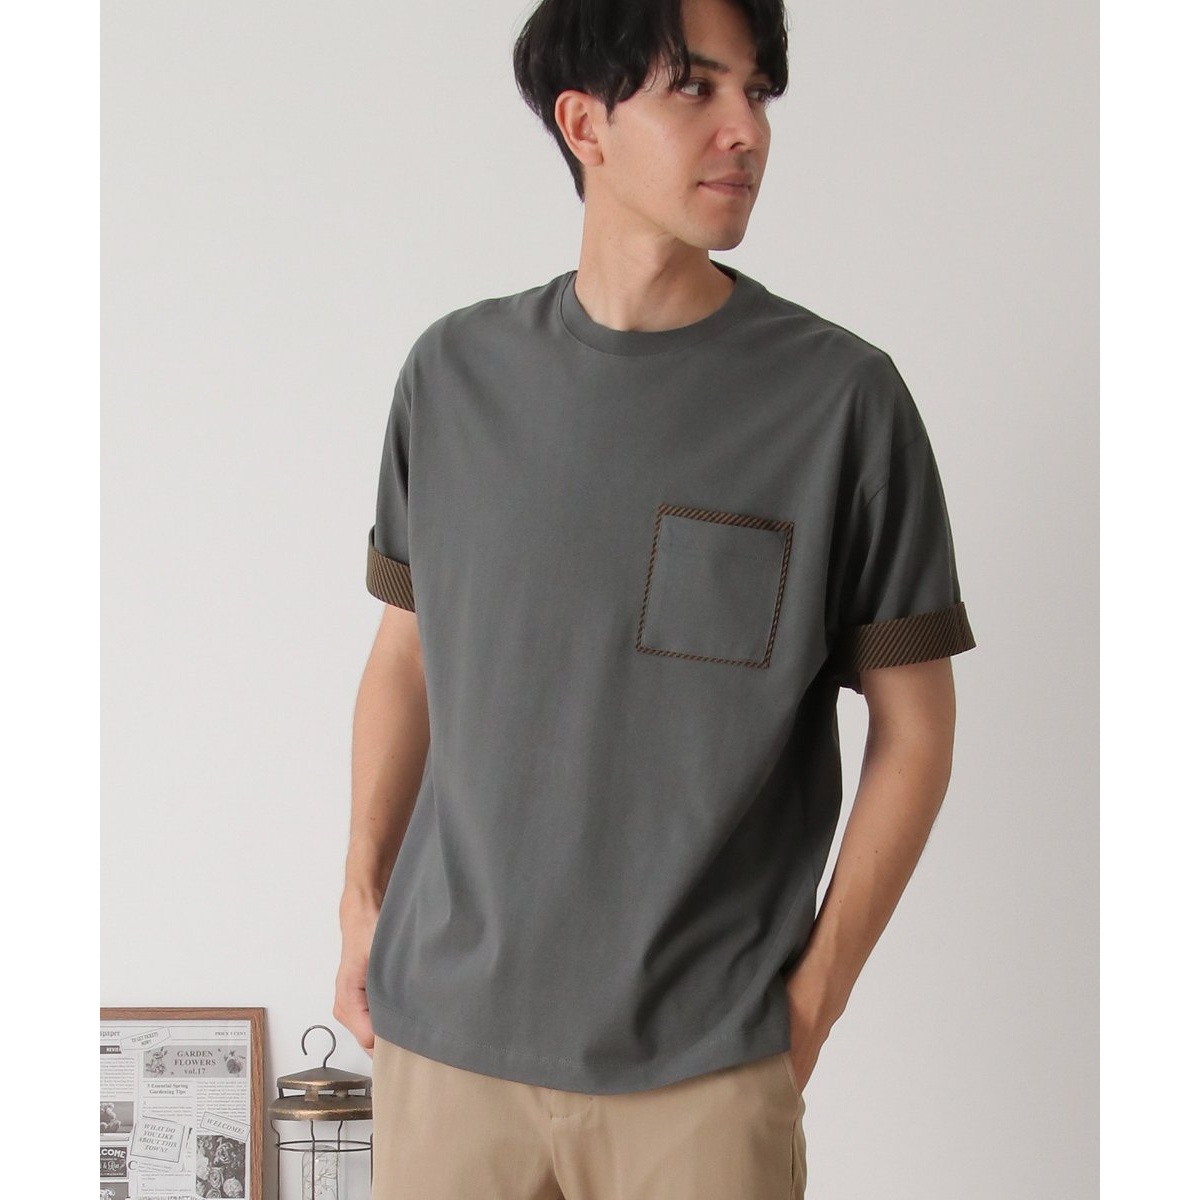 プリントMIXポケットTシャツ | イッカ(ikka) | 11321126